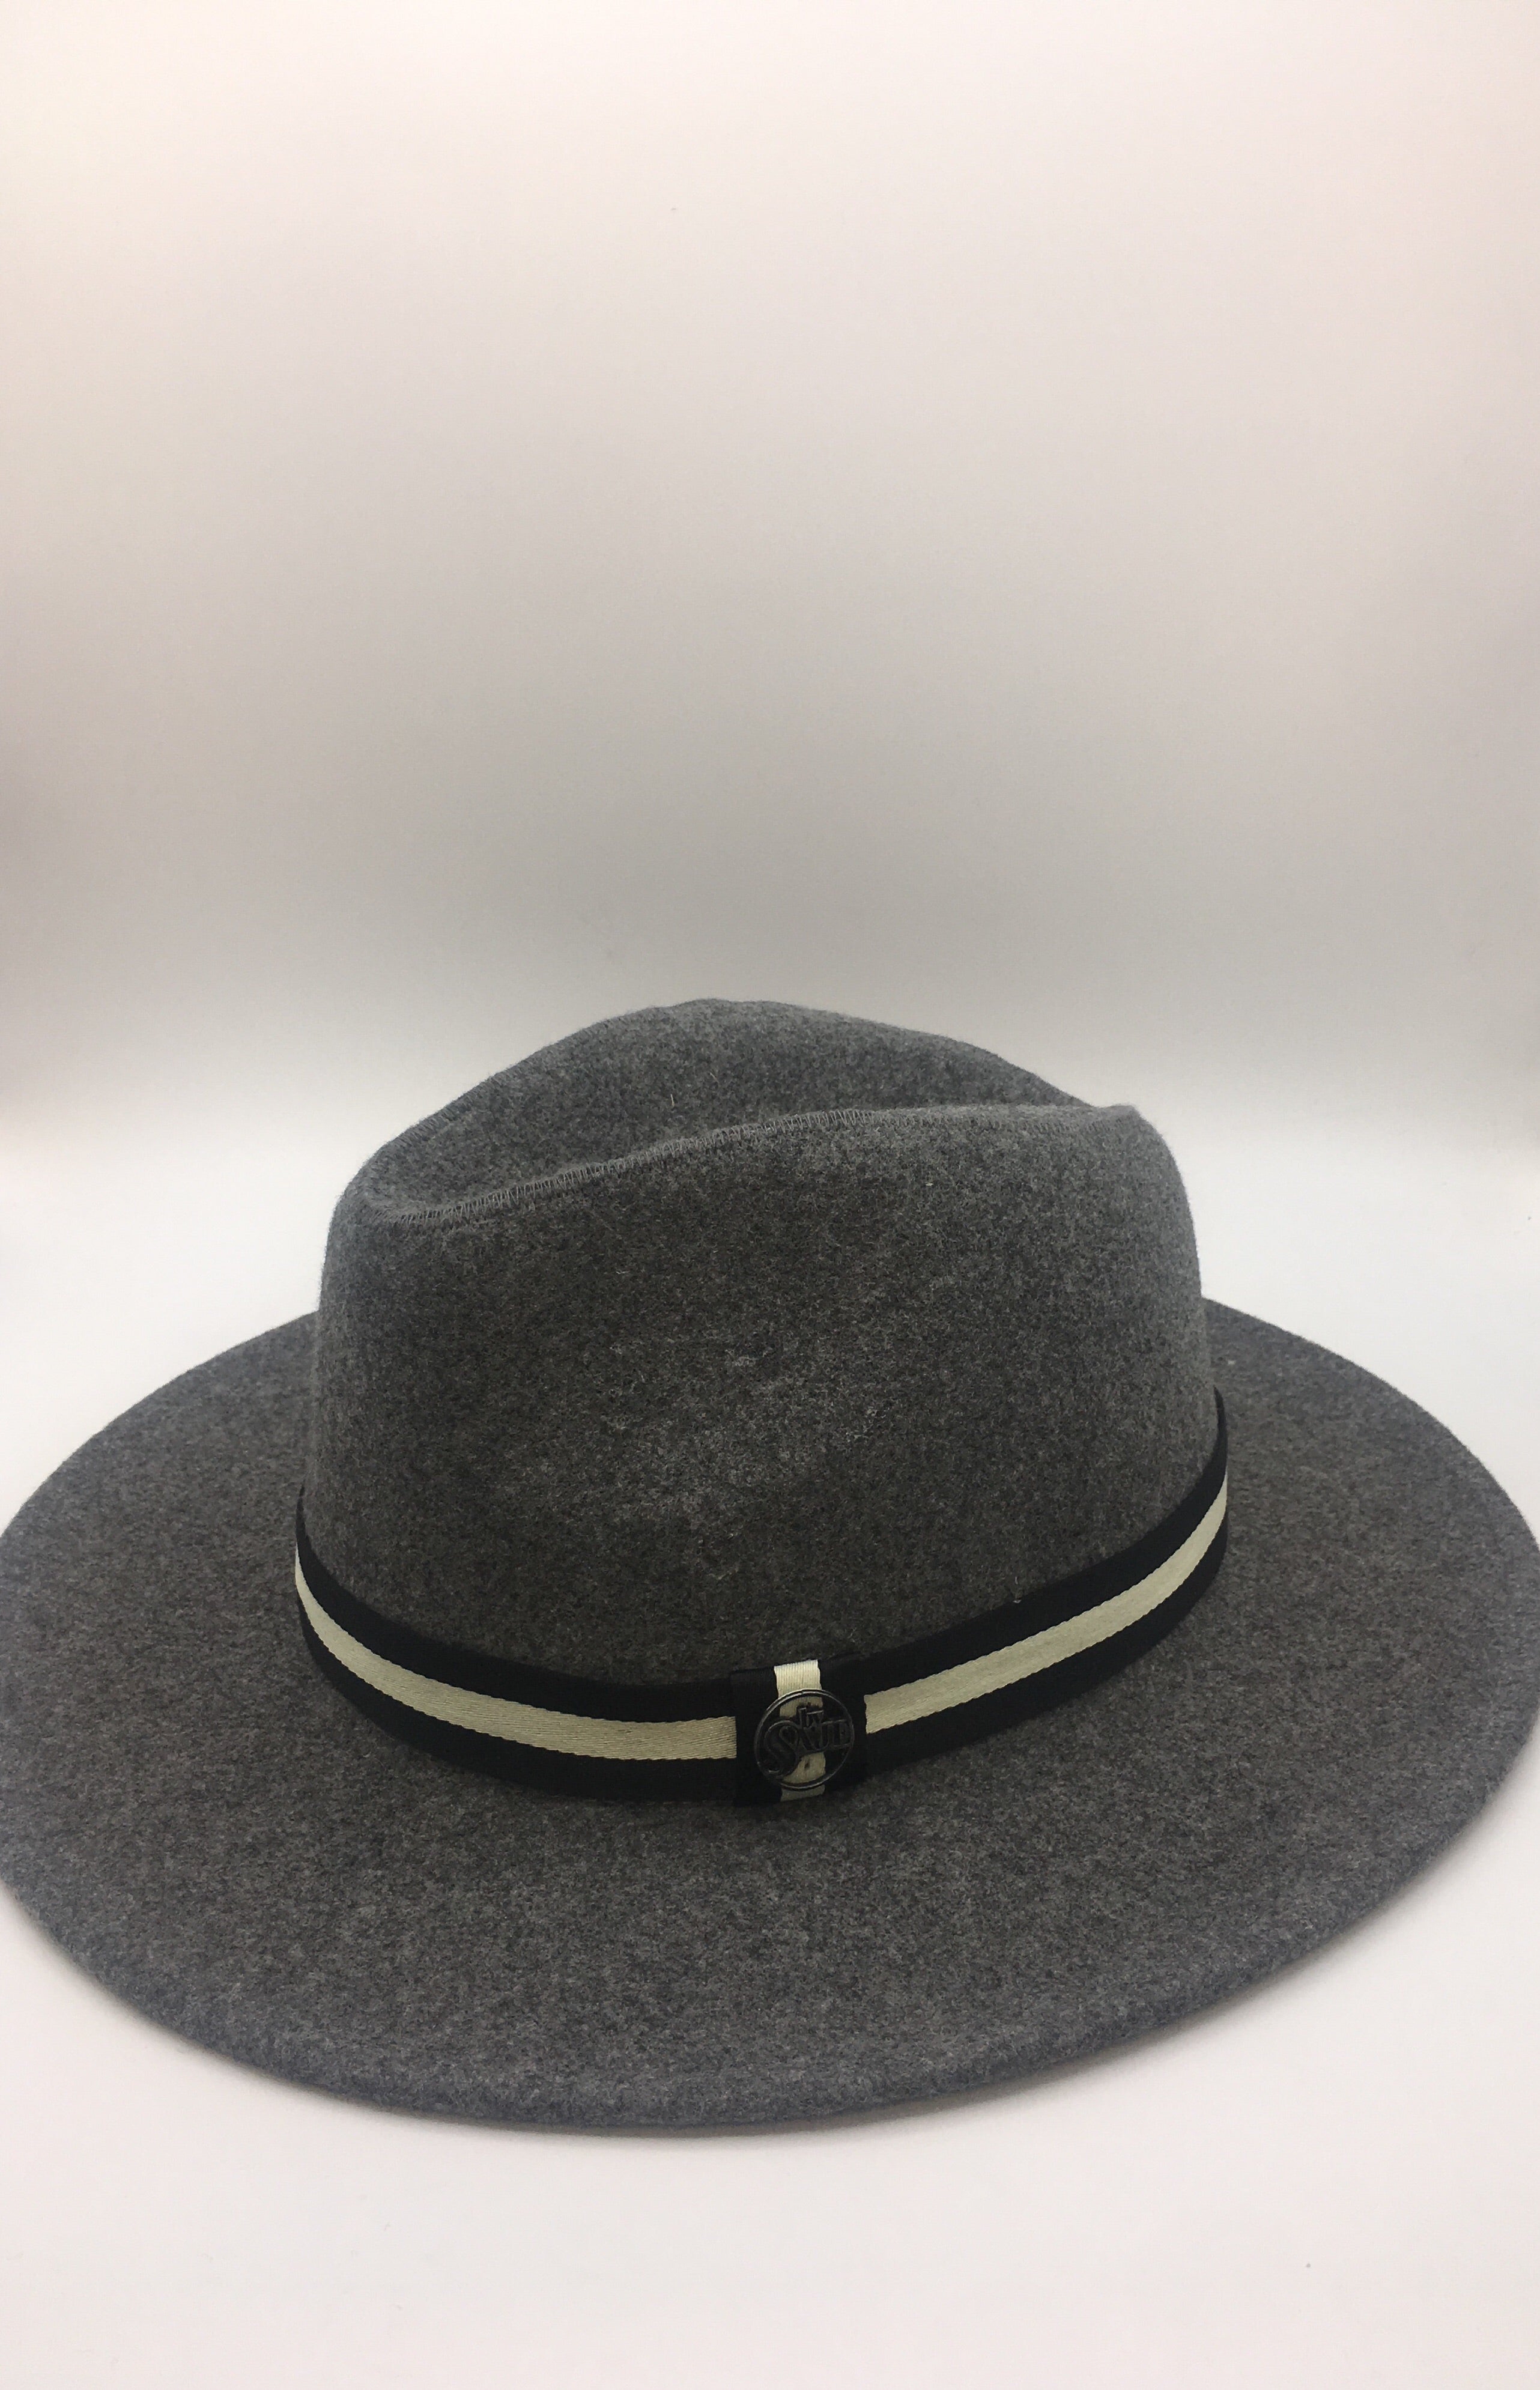 chapeau Fred chapeau soprano the voice 2019 tf1 chapeau homme accessoires chapeau by Saje